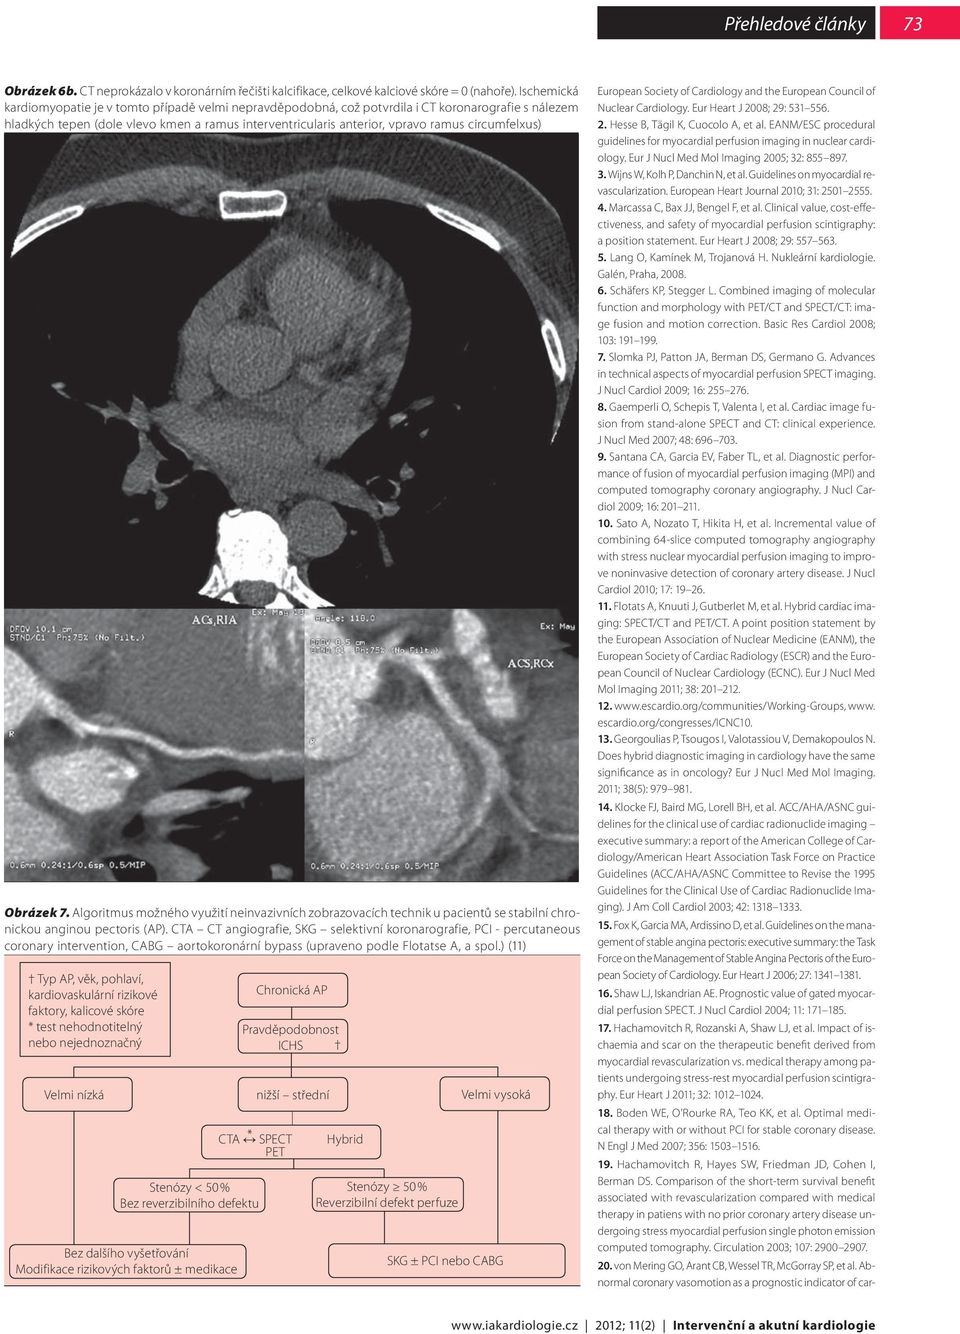 circumfelxus) Obrázek 7. Algoritmus možného využití neinvazivních zobrazovacích technik u pacientů se stabilní chronickou anginou pectoris (AP).